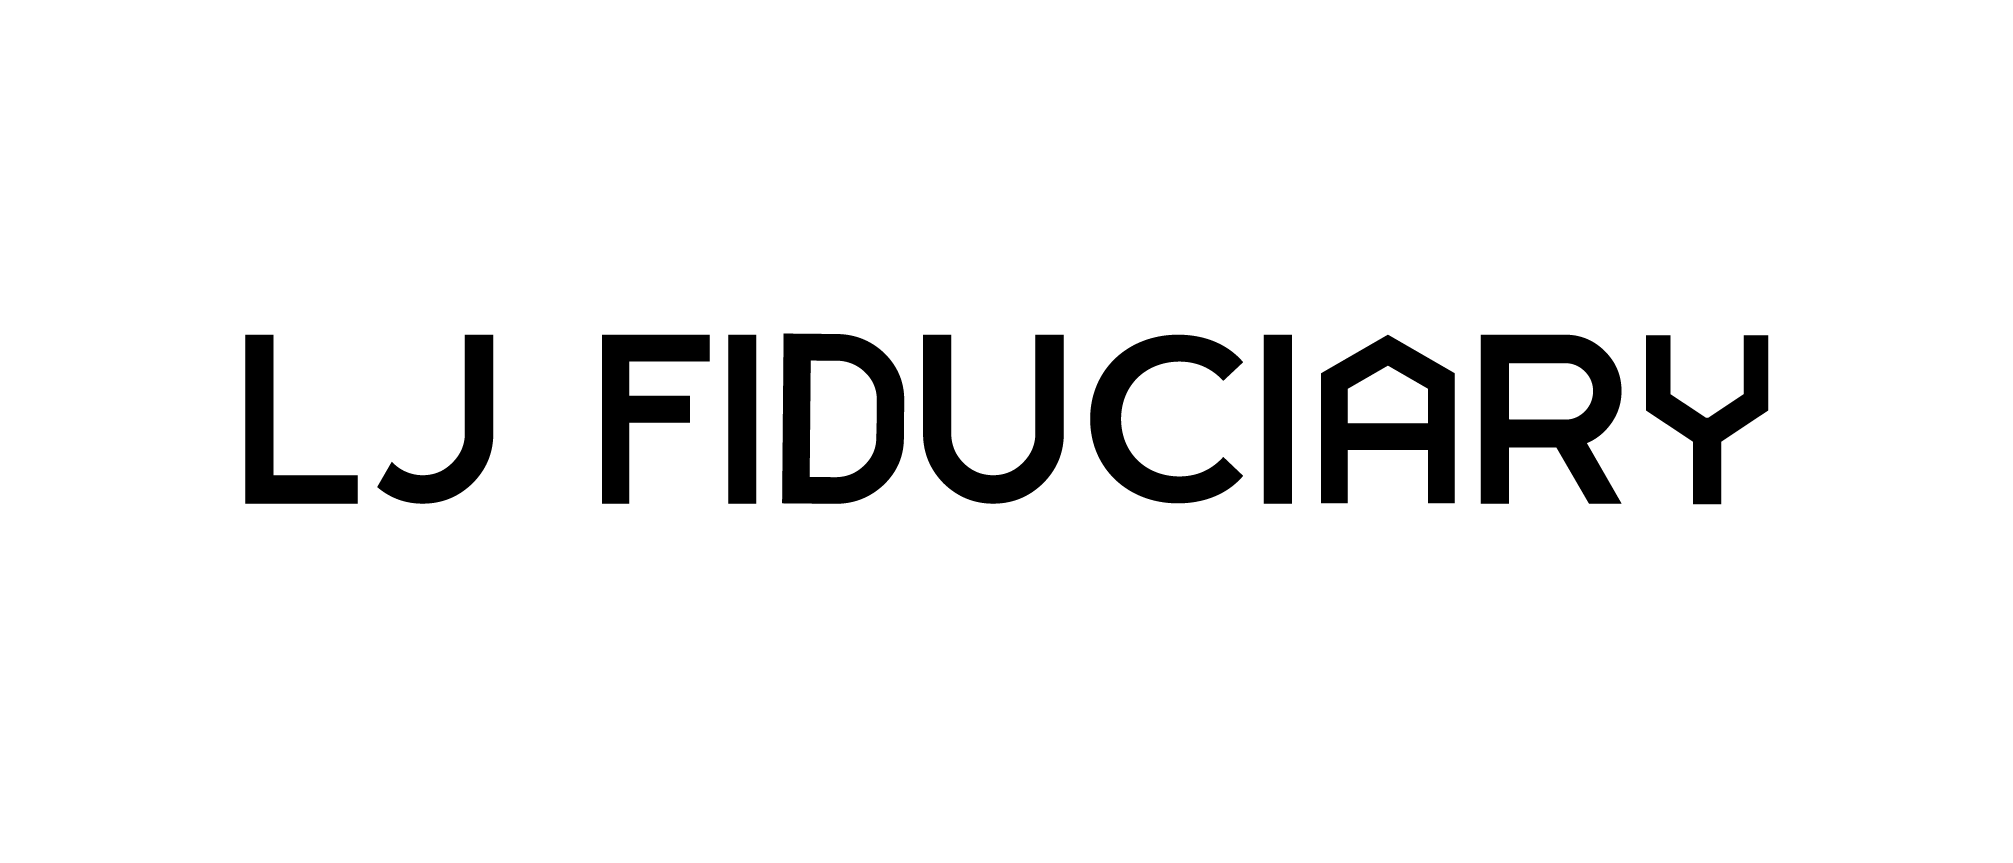 LJ Fiduciary logo